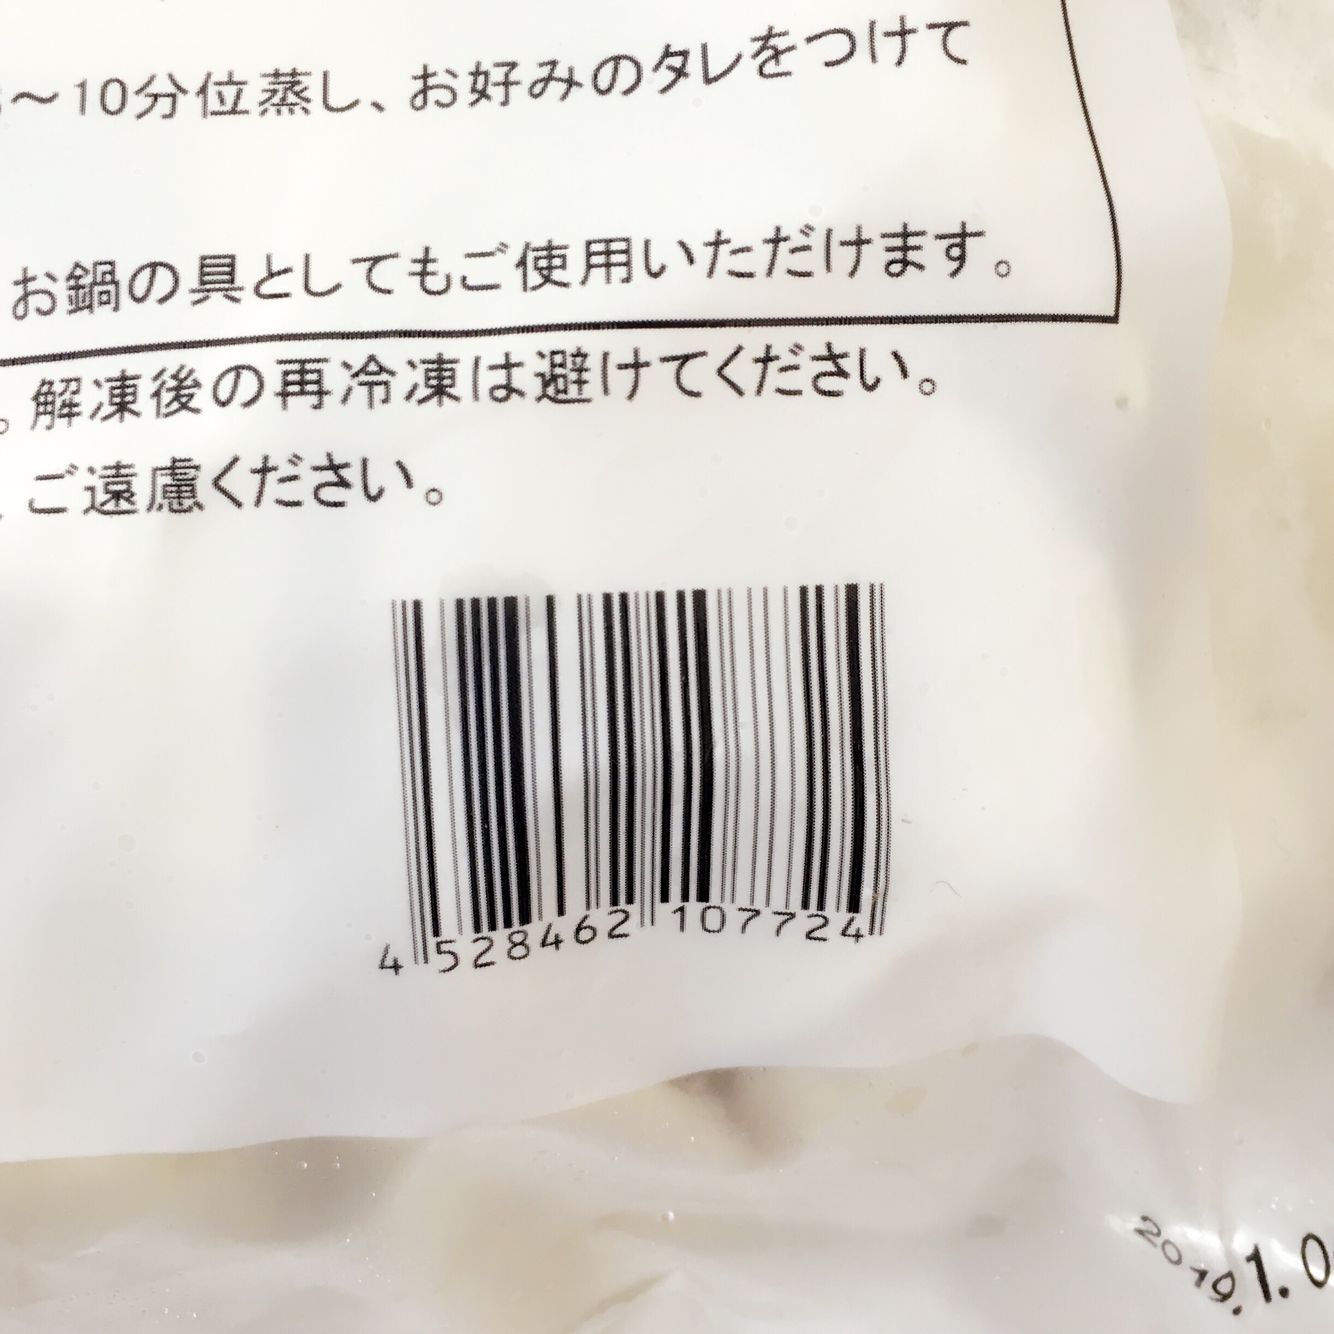 山東薺菜水餃 1kg 冷凍品